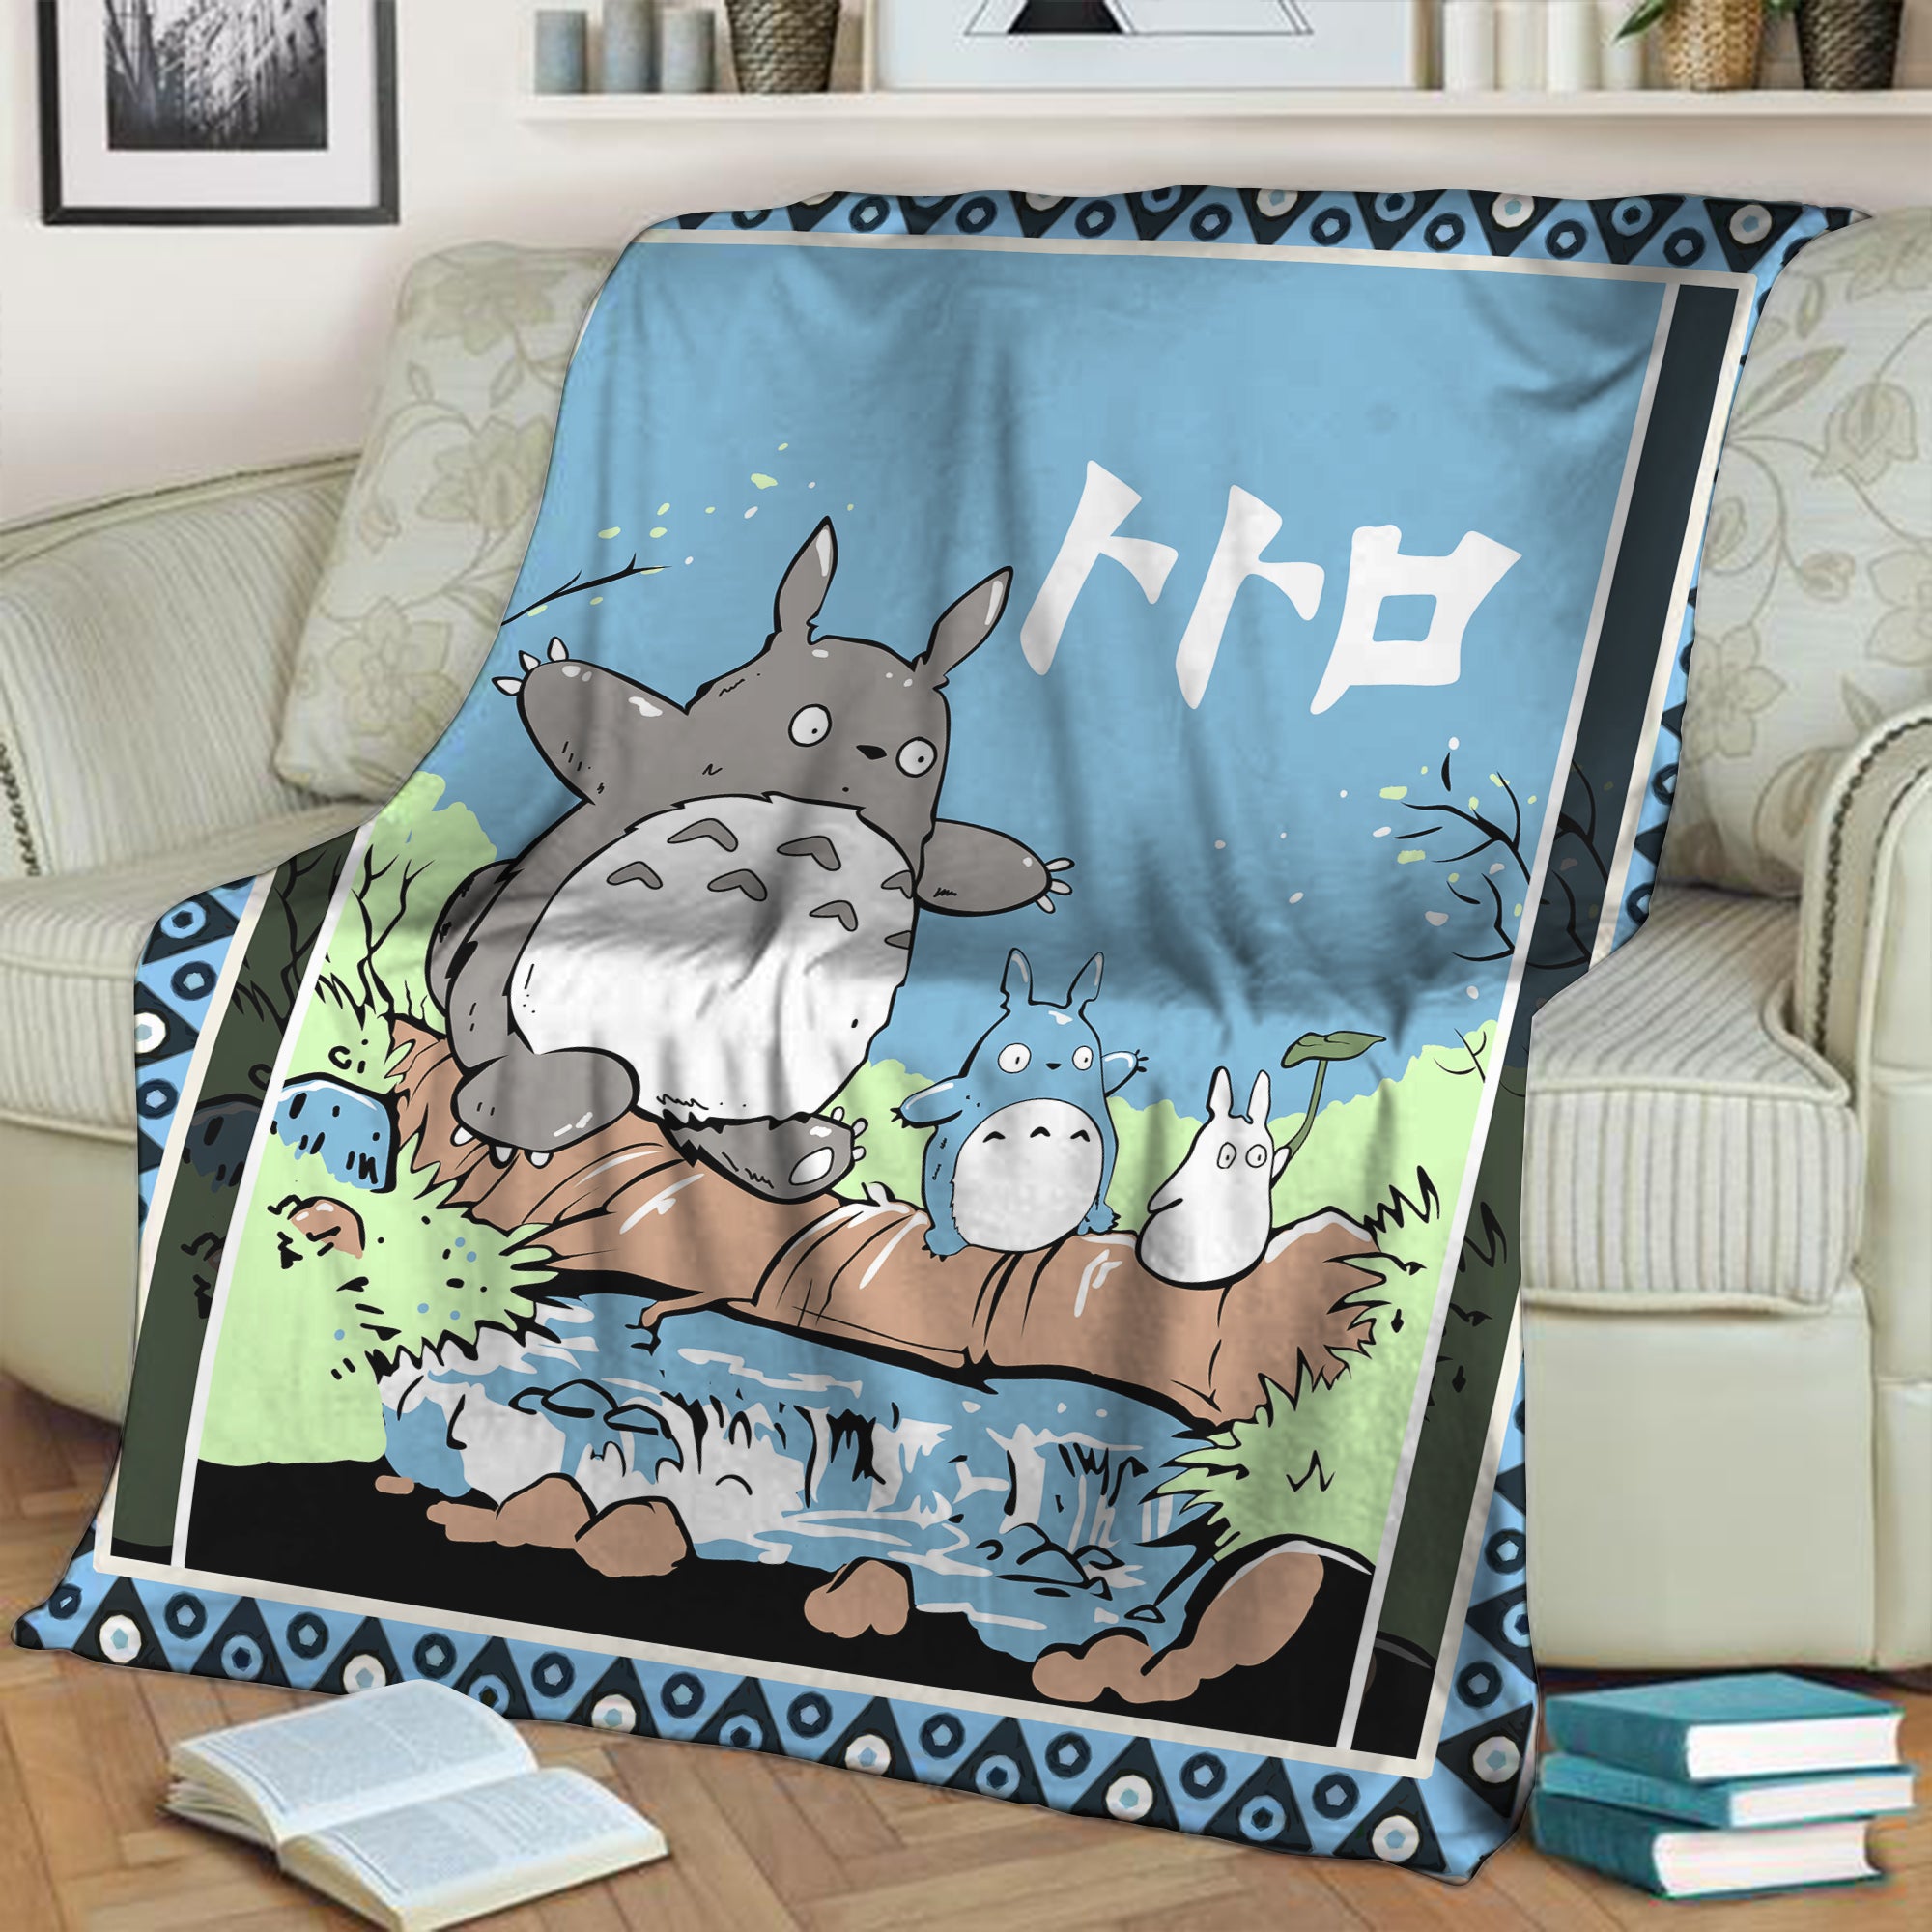 Totoro 3D Throw Blanket 150cm x 200cm  